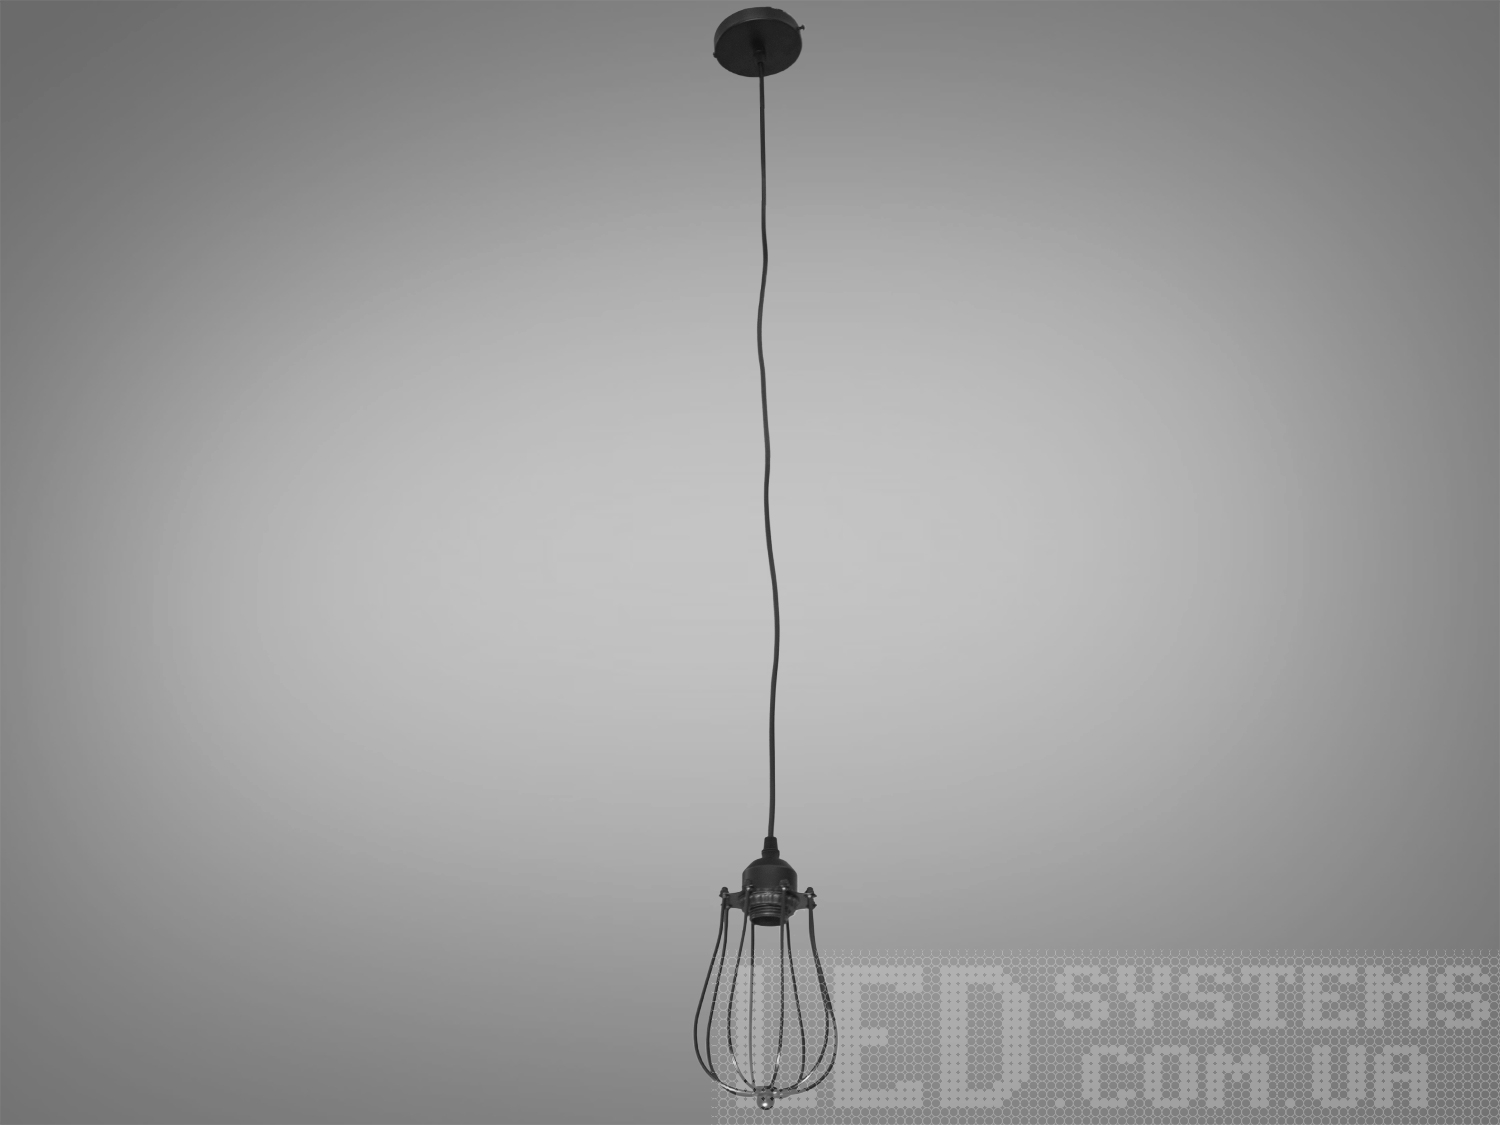 Світильник-підвіс в стилі Loft, привносить в простір поєднання промислового та сучасного дизайну. Її унікальність виражена в металевому плафоні, виготовленому зі сплетеного дроту, і теплому світлі лампочки Edison.
Основні Характеристики:
Металевий Плафон із Плетеного Дроту:
Металевий плафон виглядає, ніби він вручну плетений з дроту, створюючи цікавий інтер'єрний акцент та віддзеркалюючи простоту лофт-стилю.
Лампочка Edison:
В центрі плафону розташована лампочка Edison, яка надає освітленню теплоту та неповторний вигляд, підкреслюючи індустріальний характер.
Простий і Ефективний Дизайн:
Люстра має простий, але ефективний дизайн, який дозволяє впроваджувати її в різні стилі інтер'єру.
Металевий Відтінок:
Металевий відтінок плафону може бути вибраний відповідно до загального кольорового рішення приміщення.
Сфера застосування:
Кухня чи Їдальня:
Ідеально підійде для настільного освітлення над кухонним столом чи барною стійкою, додаючи атмосферу теплоти та стилю.
Лофтові Простори:
Лофтові приміщення чи студії, де цінується сучасний індустріальний дизайн.
Кафе або Бари:
У комерційних приміщеннях, таких як кафе або бари, де стиль лофт завжди в тренді.
Творчі Робочі Простори:
В офісах чи творчих просторах (арт-простори, коворкінги, квеструми, фото-студії  та інш., де важливий естетичний дизайн і функціональність.
Цей світильник в стилі Loft створює не лише практичне світло, але і виражає тепло та стиль, вносячи унікальний шарм в будь-яке приміщення.
 Лампочка в комплект не входить.